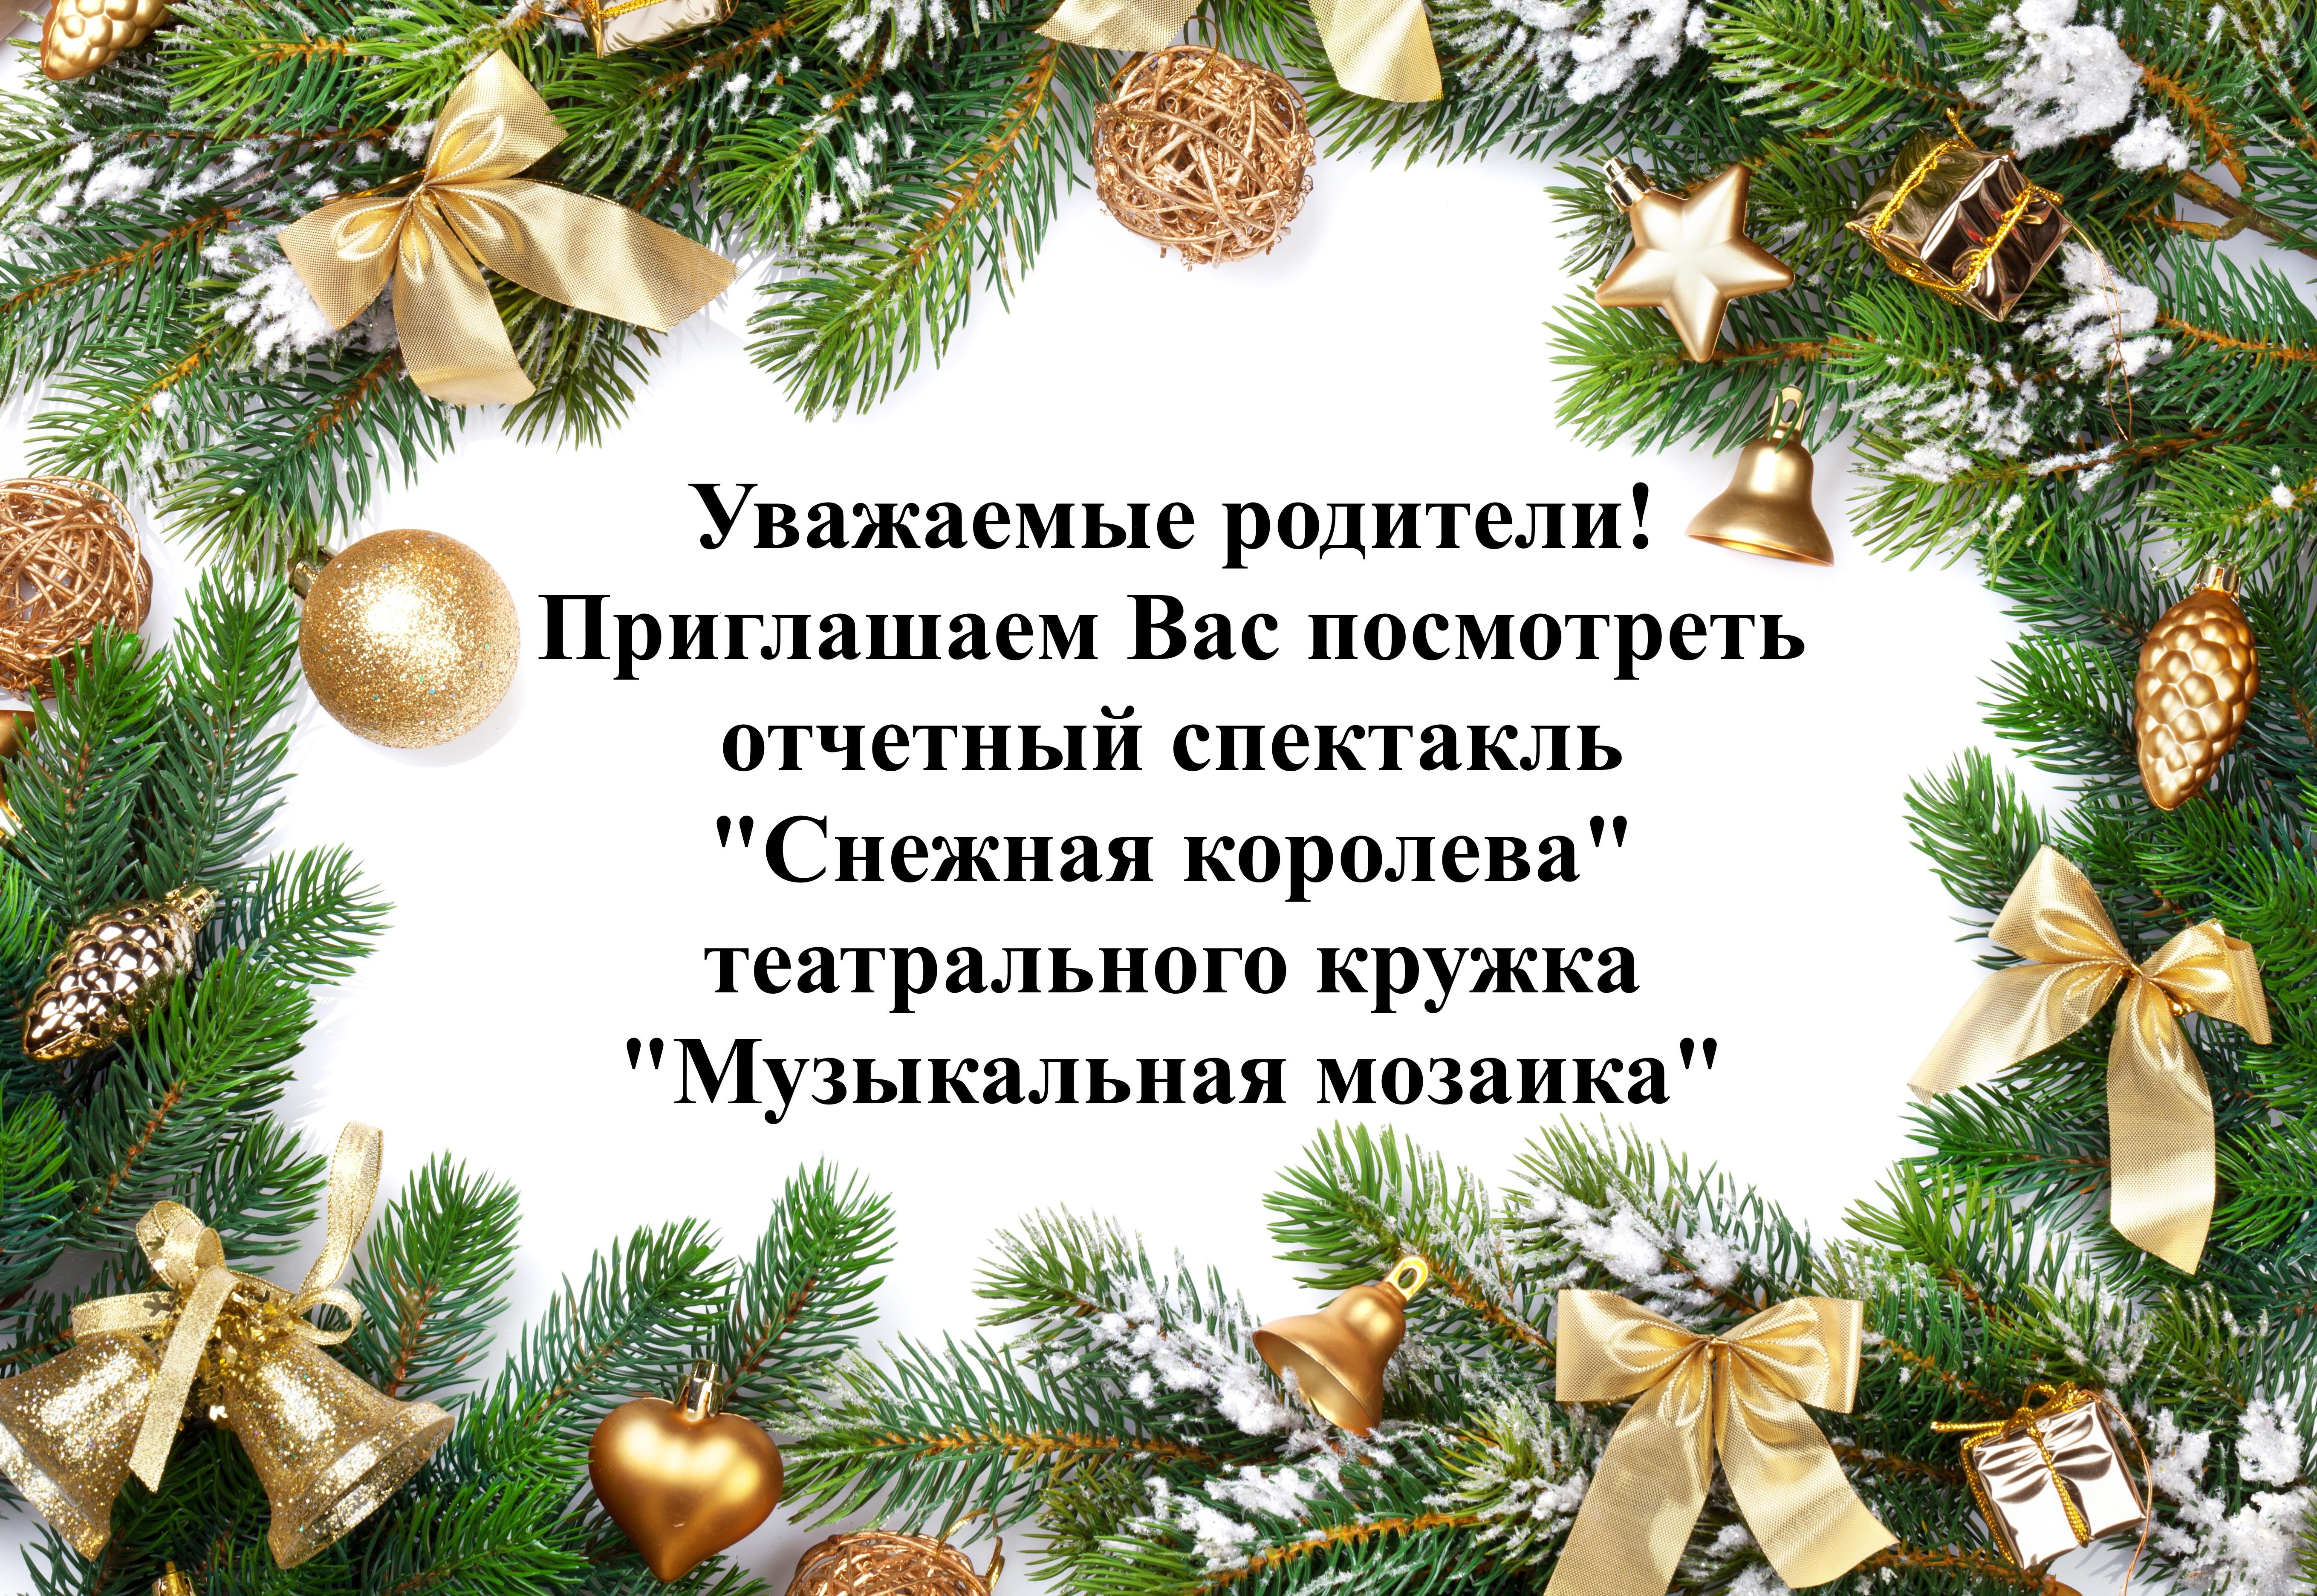 rozhdestvo-christmas-new-year-elka-gift-holiday-celebration11.jpg